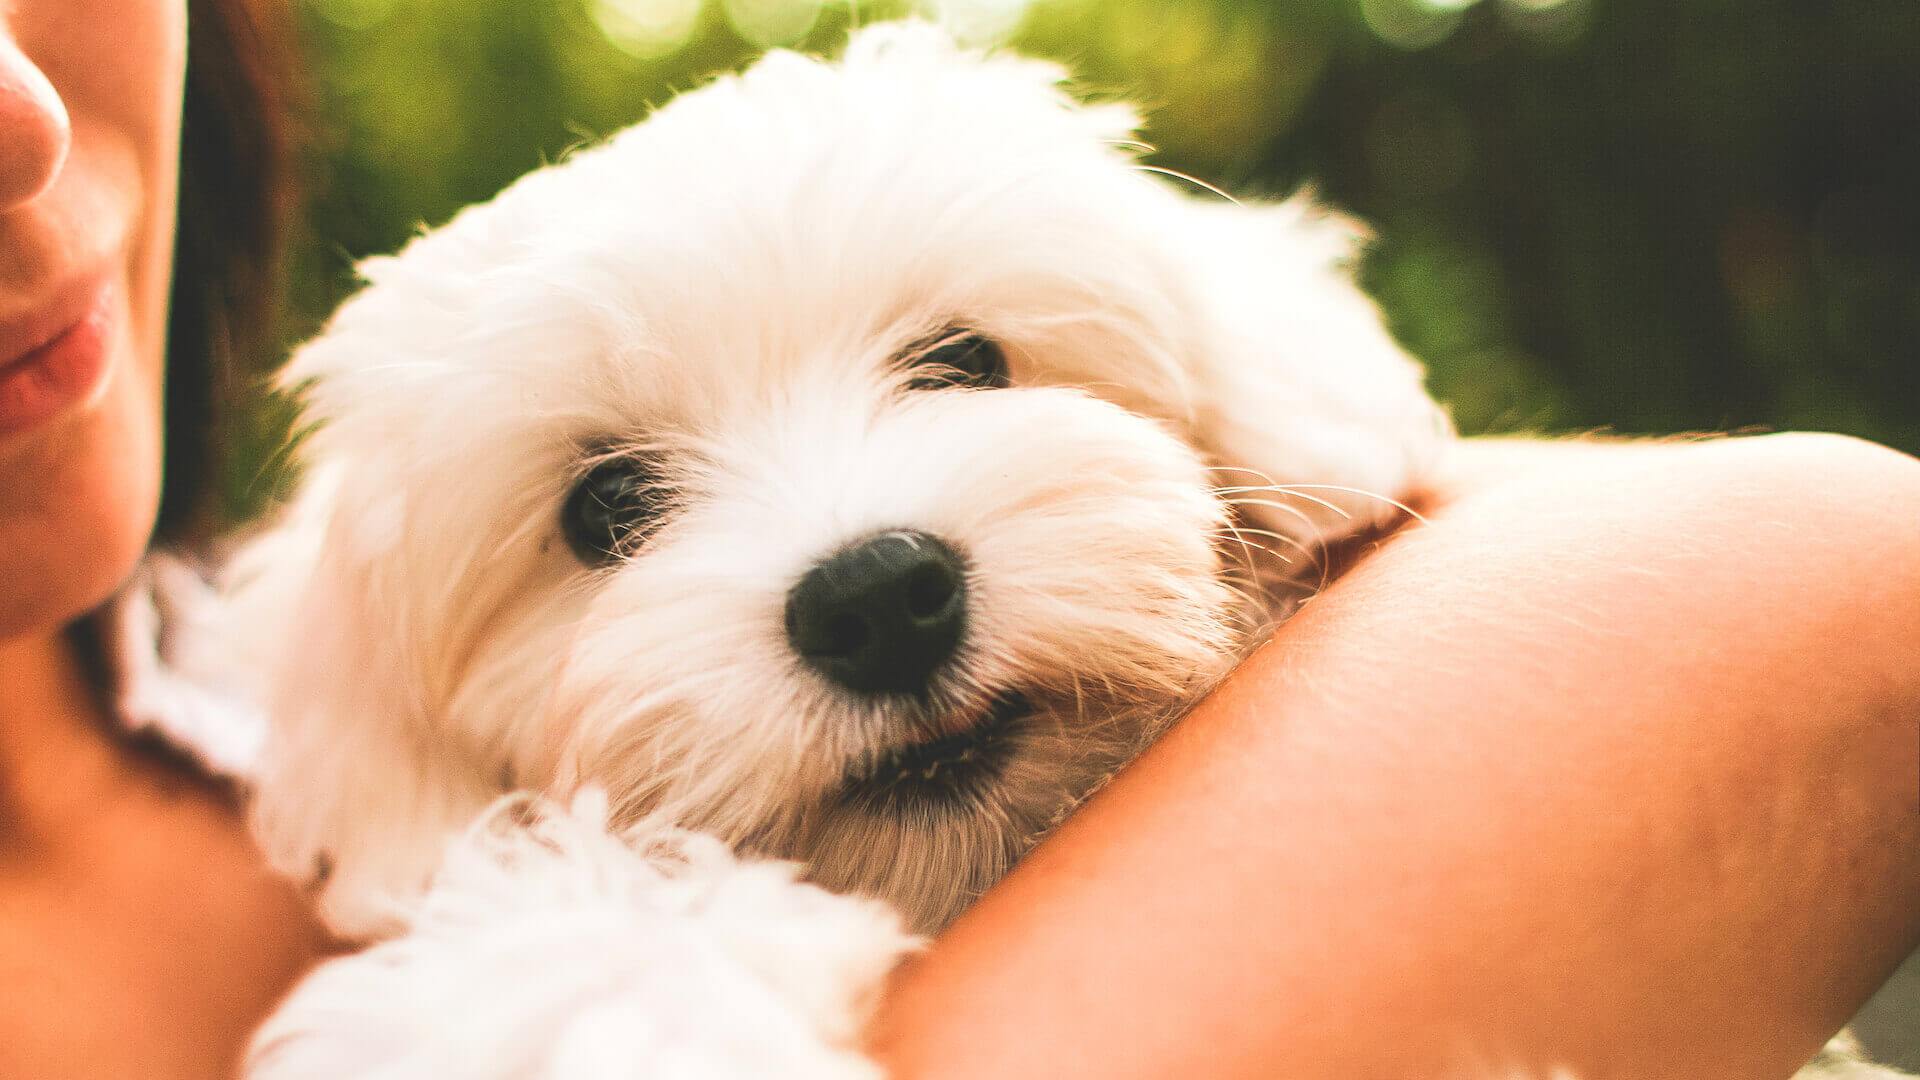 Spa-Paket mit Massage, Wellness und Wärme: Malteser Hundewelpe auf dem Arm einer Frau